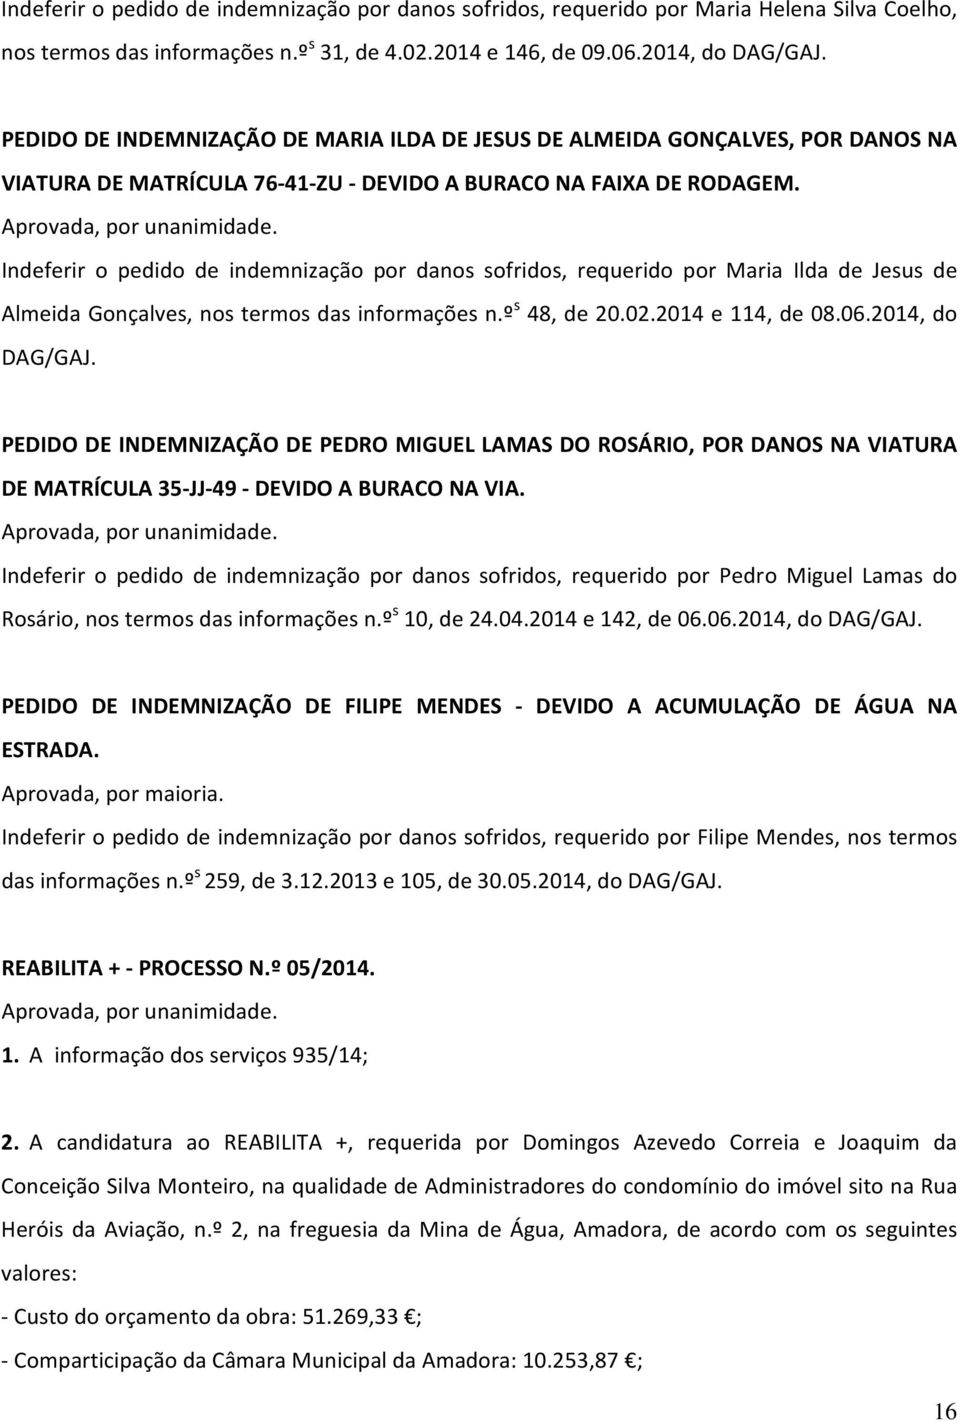 Indeferir o pedido de indemnização por danos sofridos, requerido por Maria Ilda de Jesus de Almeida Gonçalves, nos termos das informações n.º s 48, de 20.02.2014 e 114, de 08.06.2014, do DAG/GAJ.